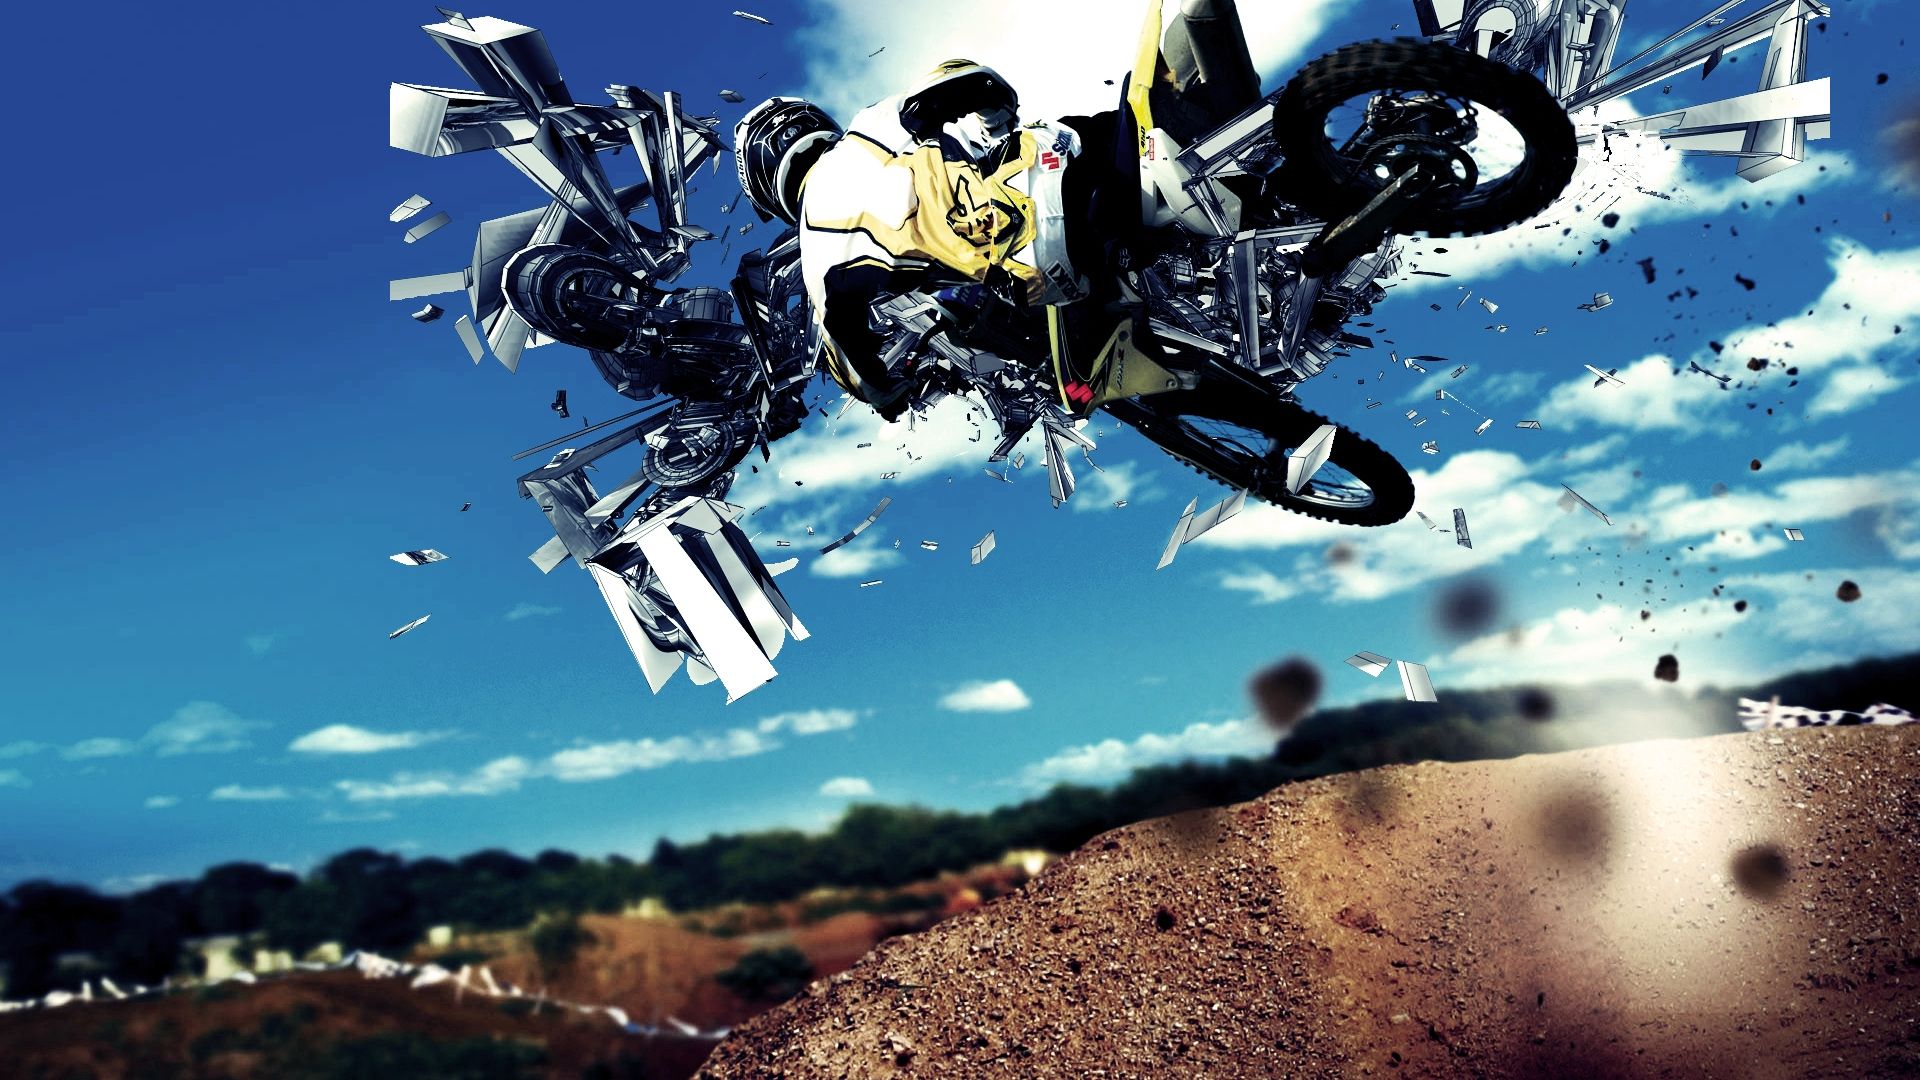 Free Motocross Dirt Bike High Quality Wallpaper ID378386 For Full